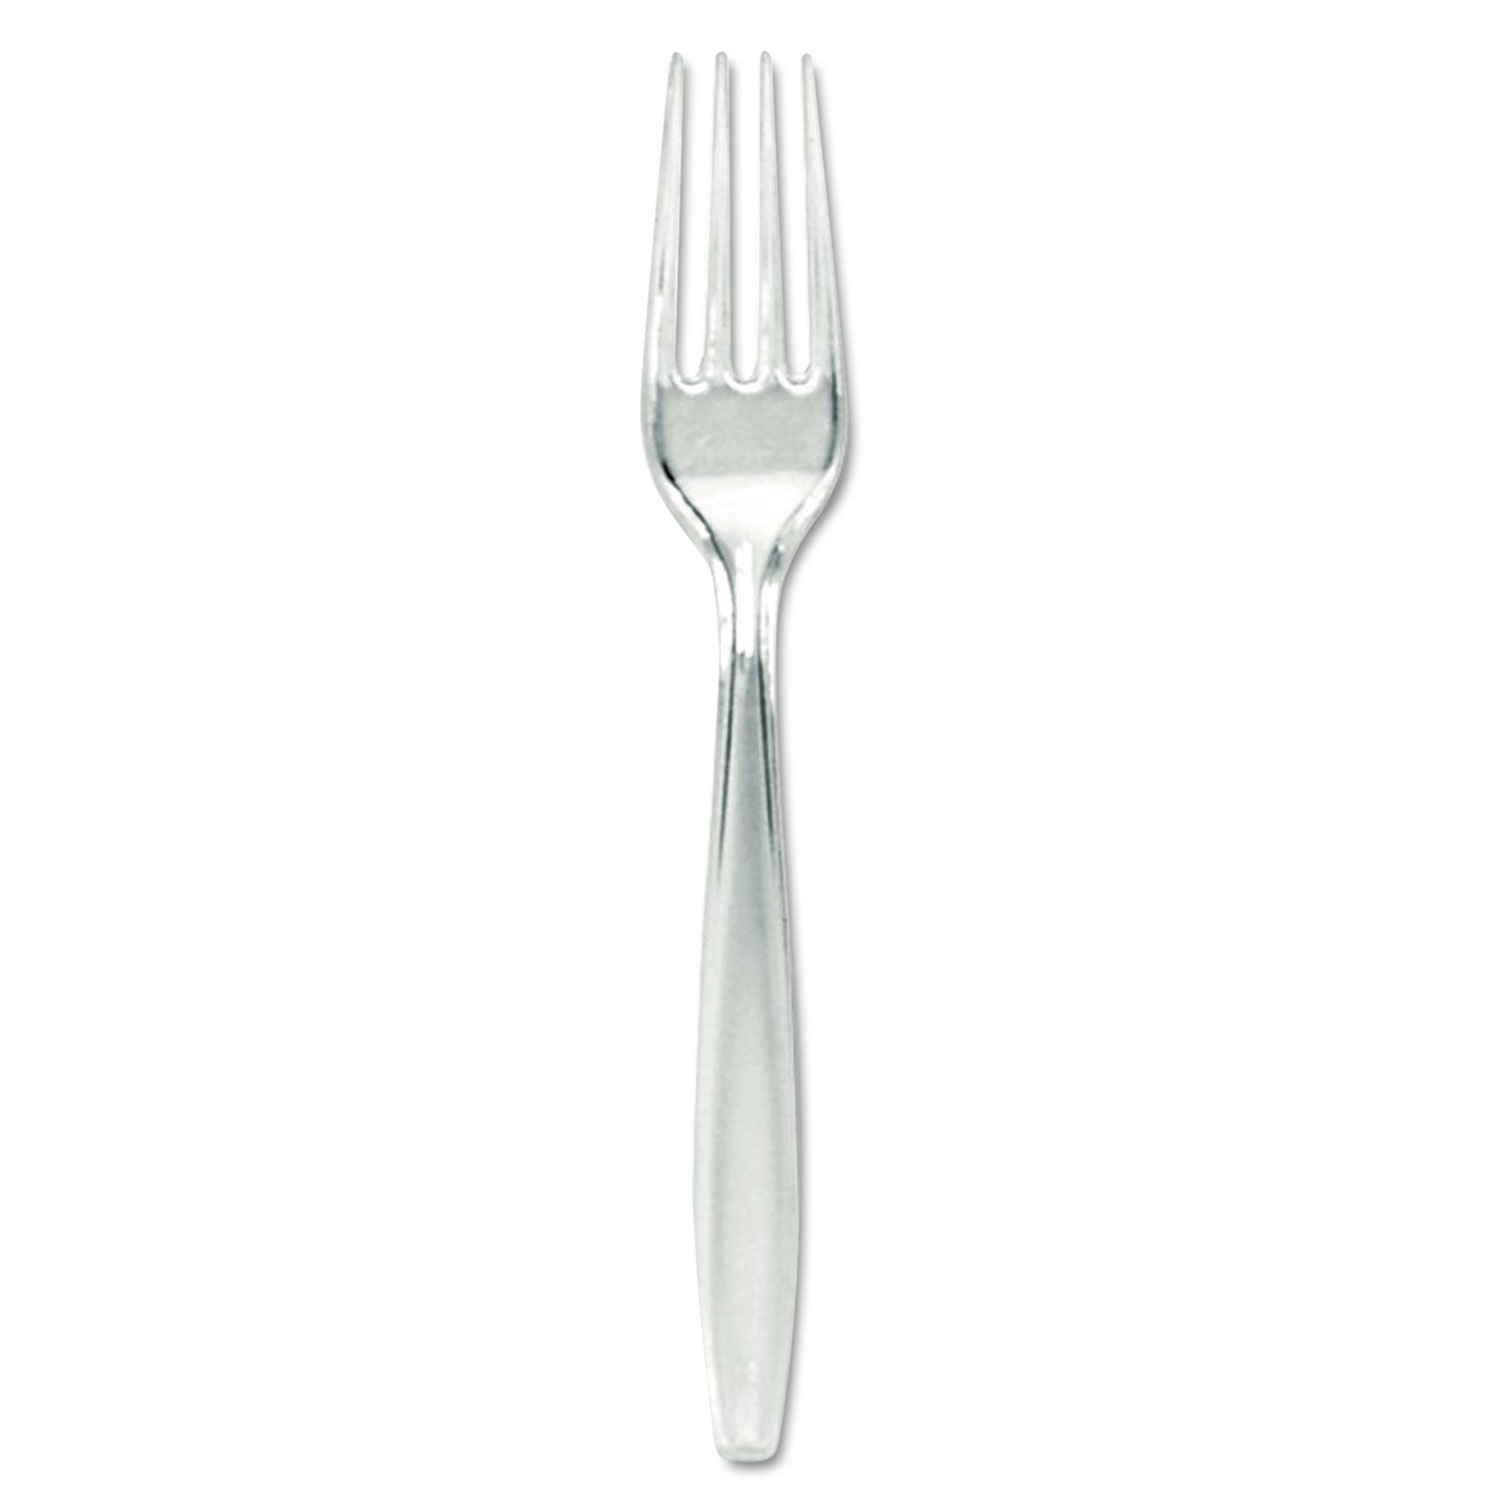  Dixie FH017 Plastic Cutlery, Forks, Heavyweight, Clear (DXEFH017) 